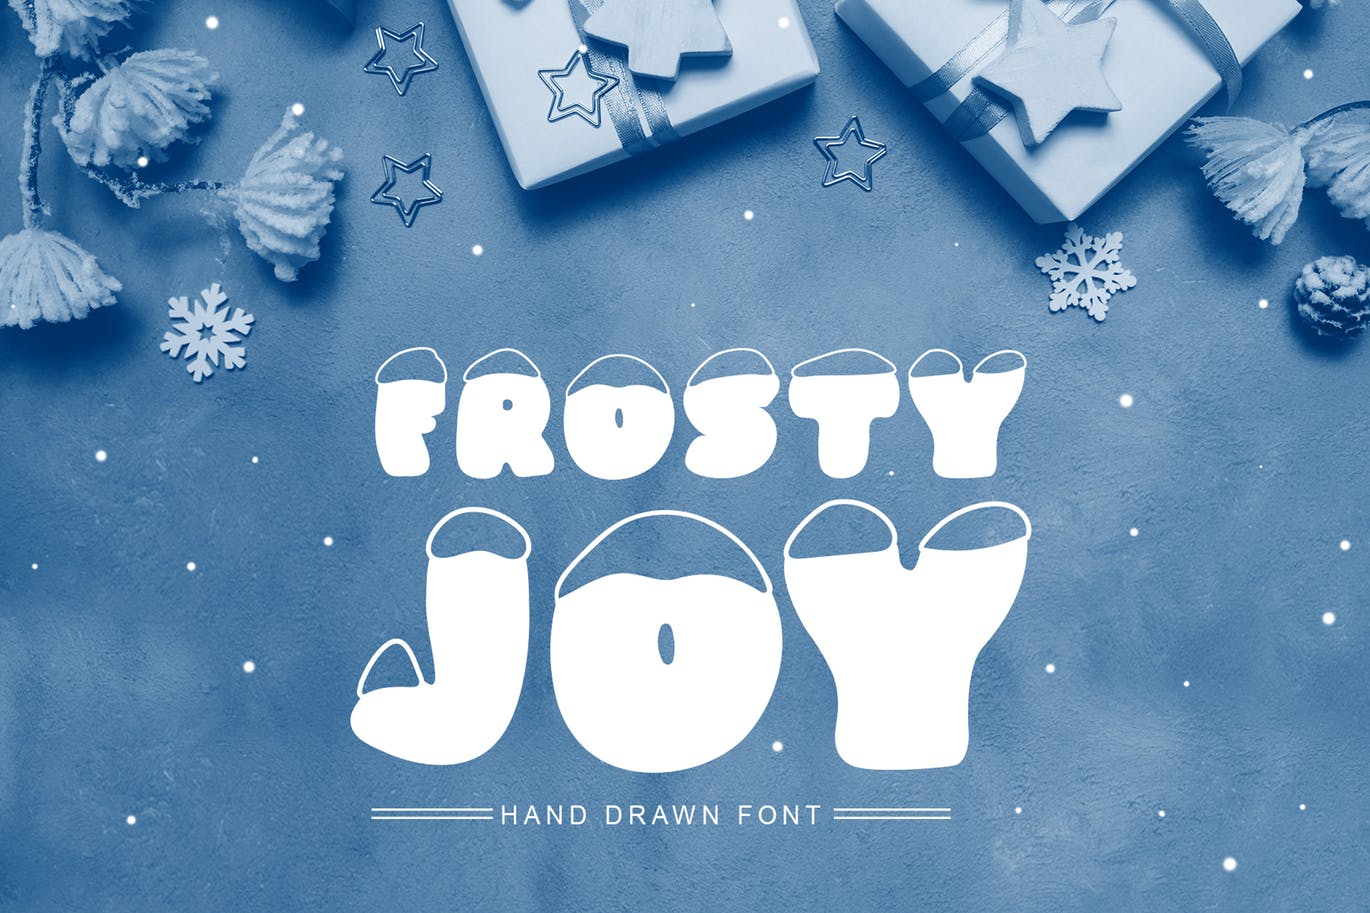 斯堪的纳维亚风格可爱积雪字体亿图网易图库精选 Frosty Joy Hand Drawn Display Font插图